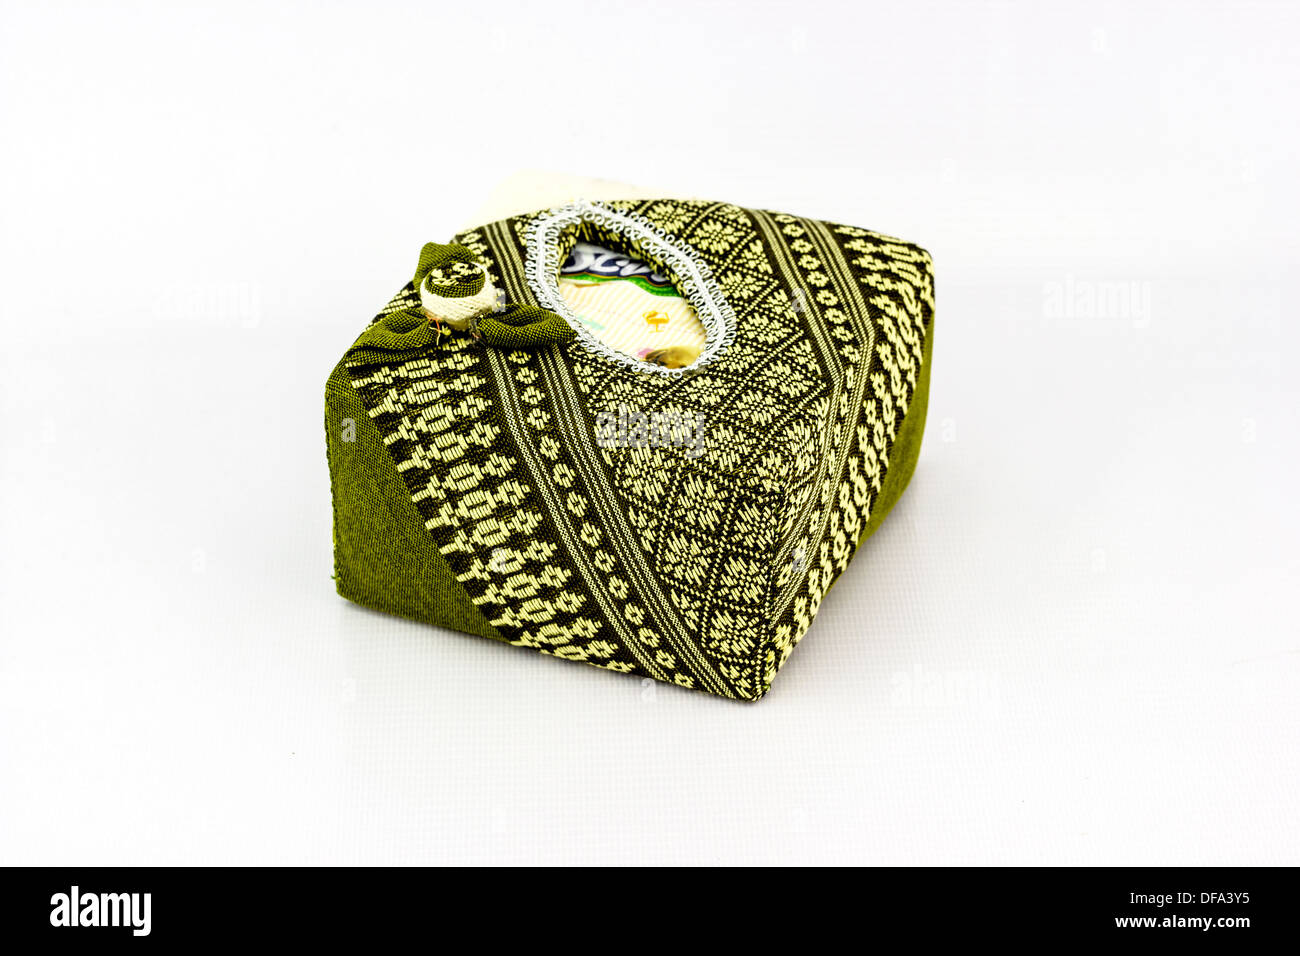 The Tissue box designs in asia Stock Photo